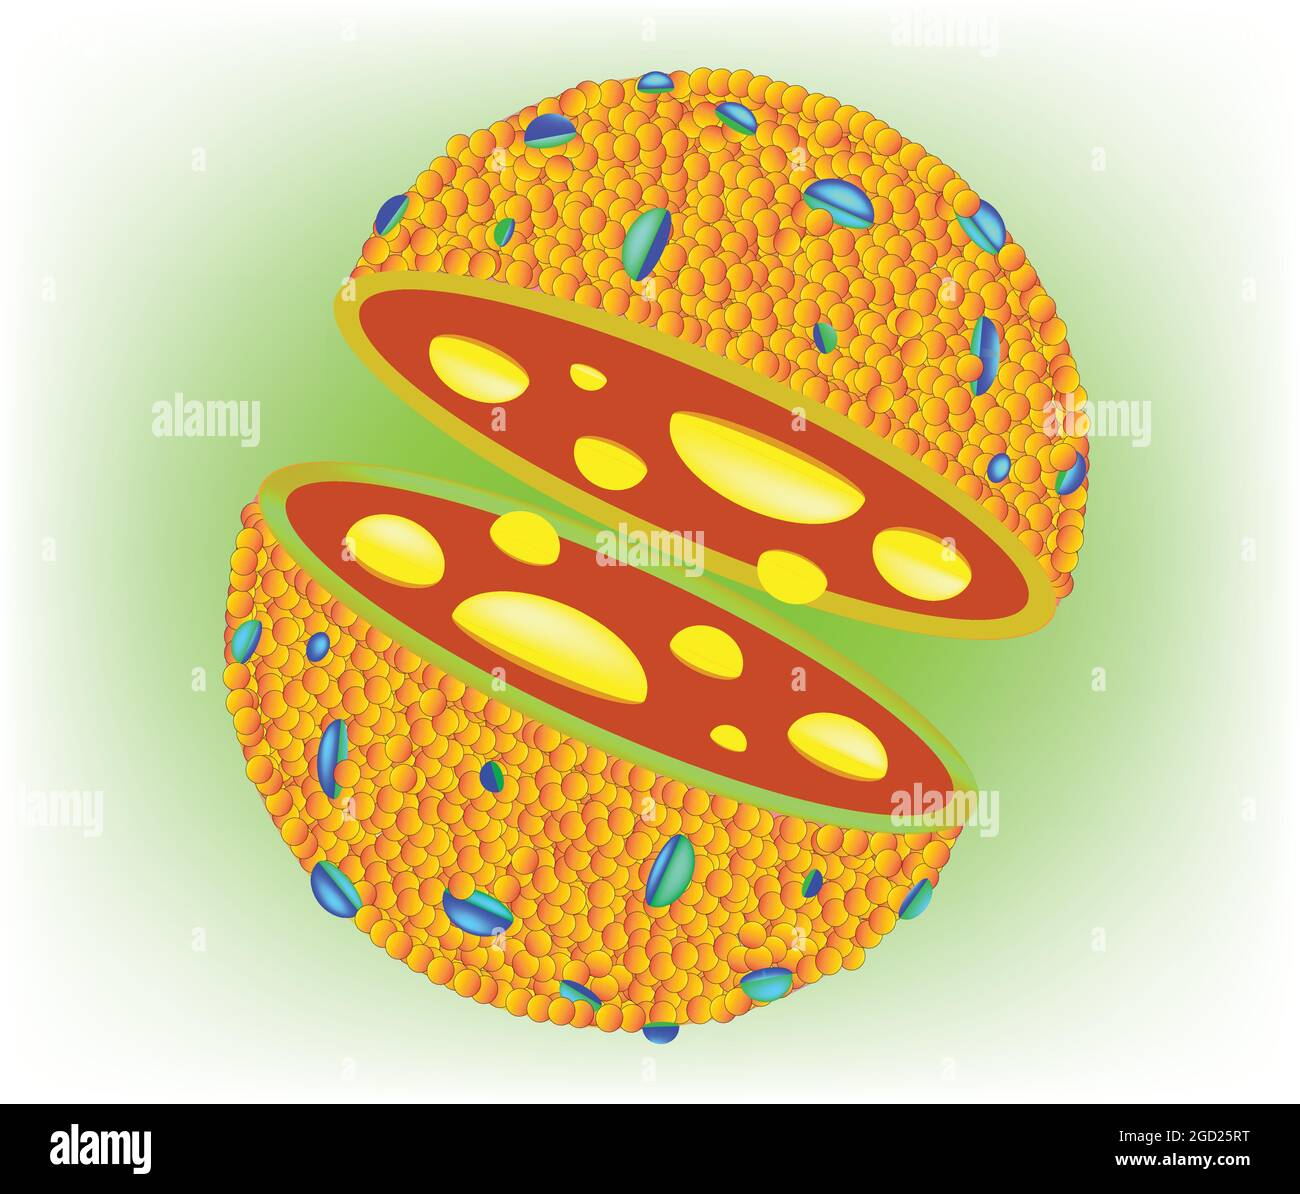 Anatomie biologique du lysosome, structure du lysosome cellulaire avec bicouche de phospholipides, structure du lysosome Illustration de Vecteur